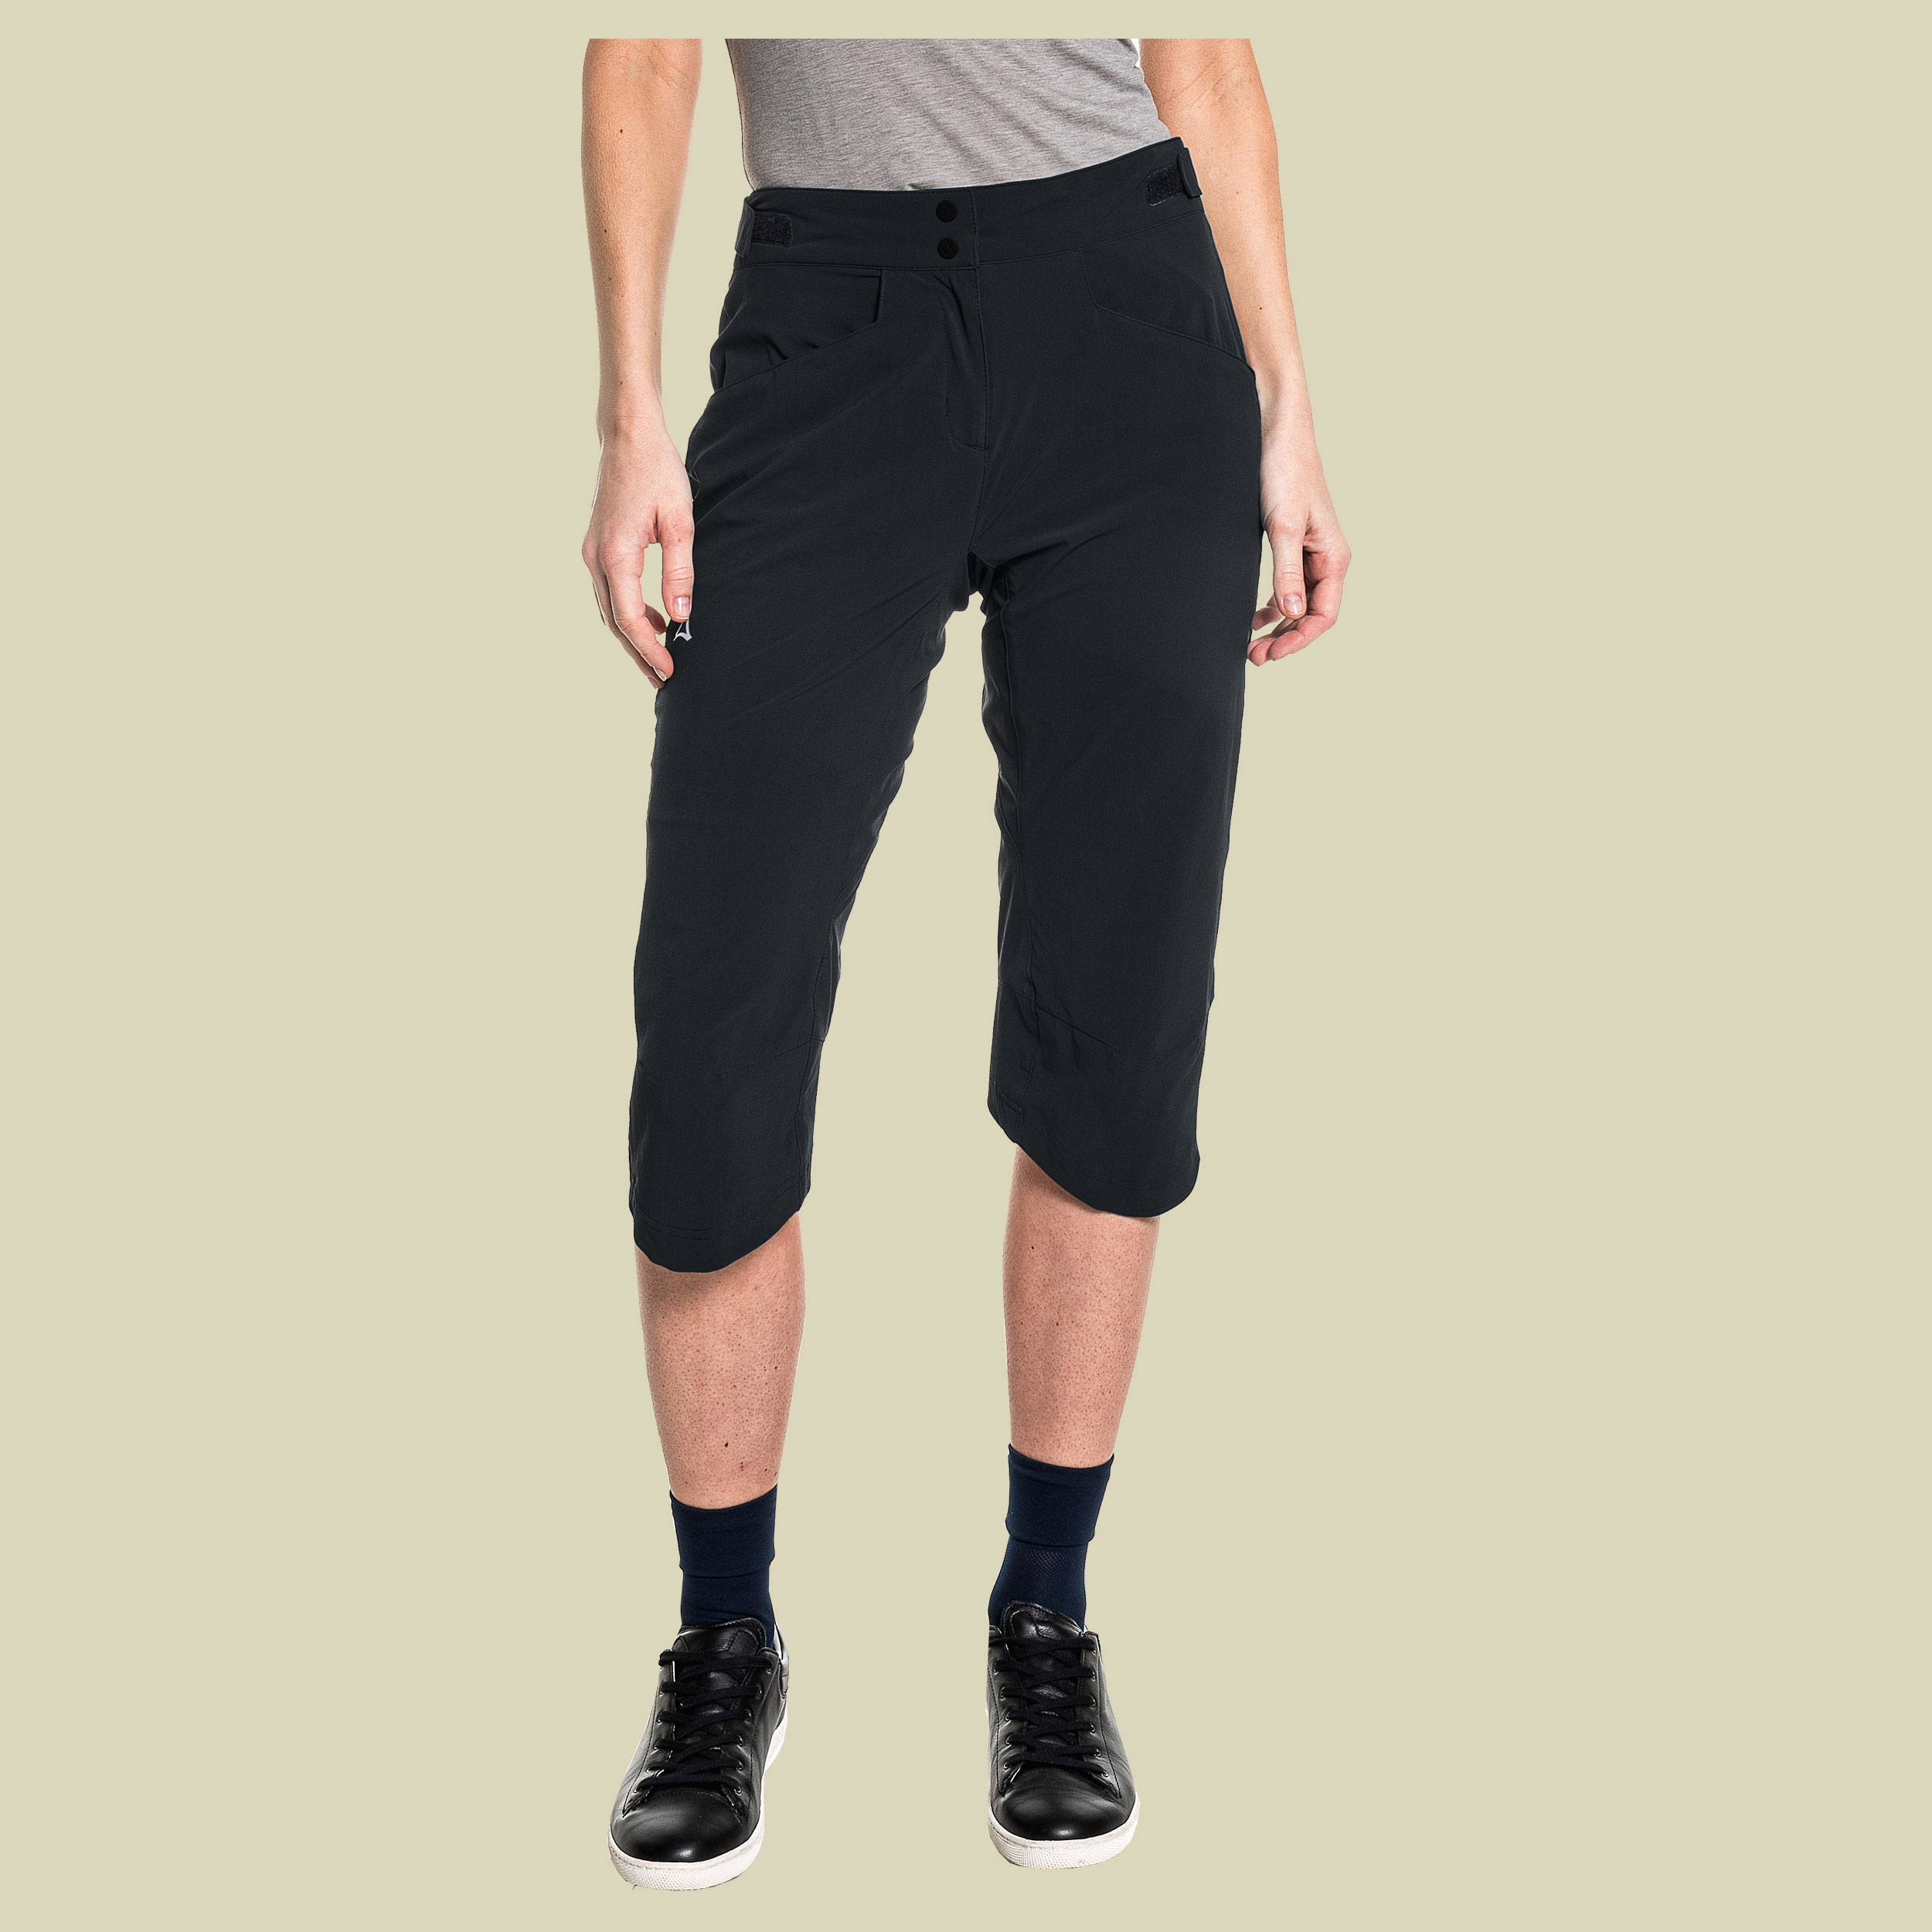 Moldavia Pants Women Größe 40 Farbe black